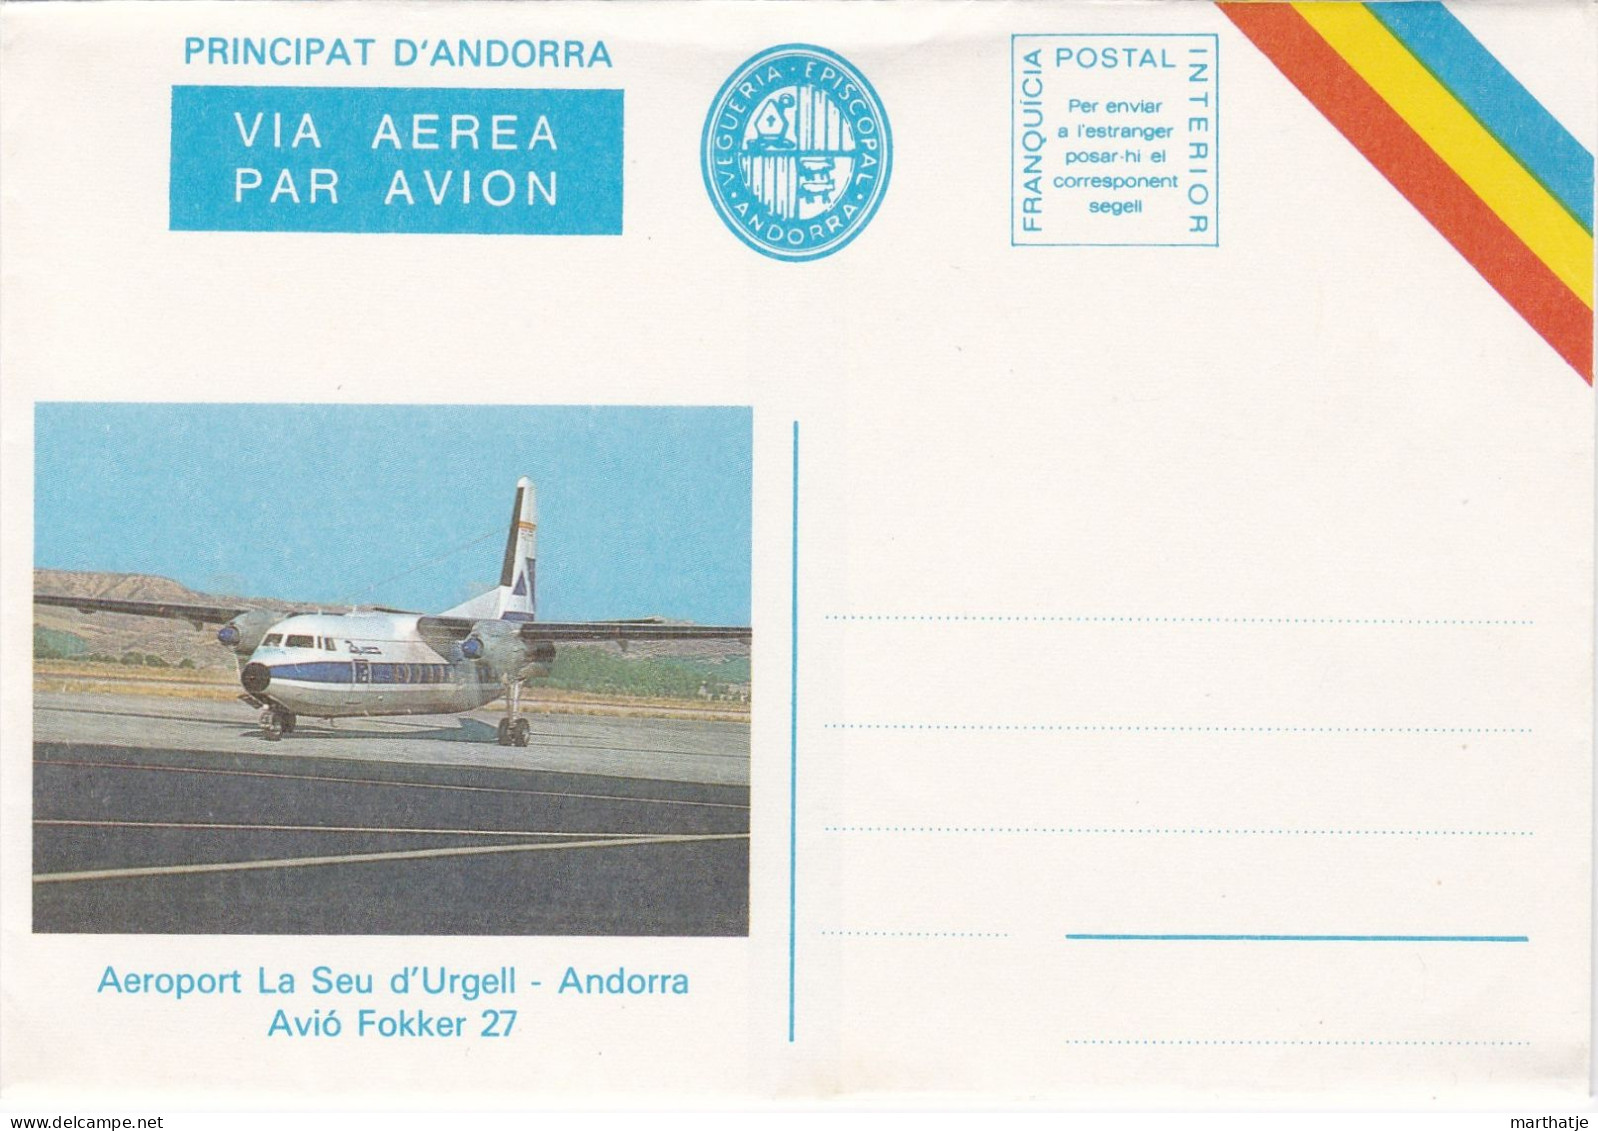 Principat D'Andorra -  Via Aerea Par Avion - Vegueria Episcopal - Aeroport La Seu D'Urgell - Avio Fokker 27 - Andorra - Episcopal Viguerie